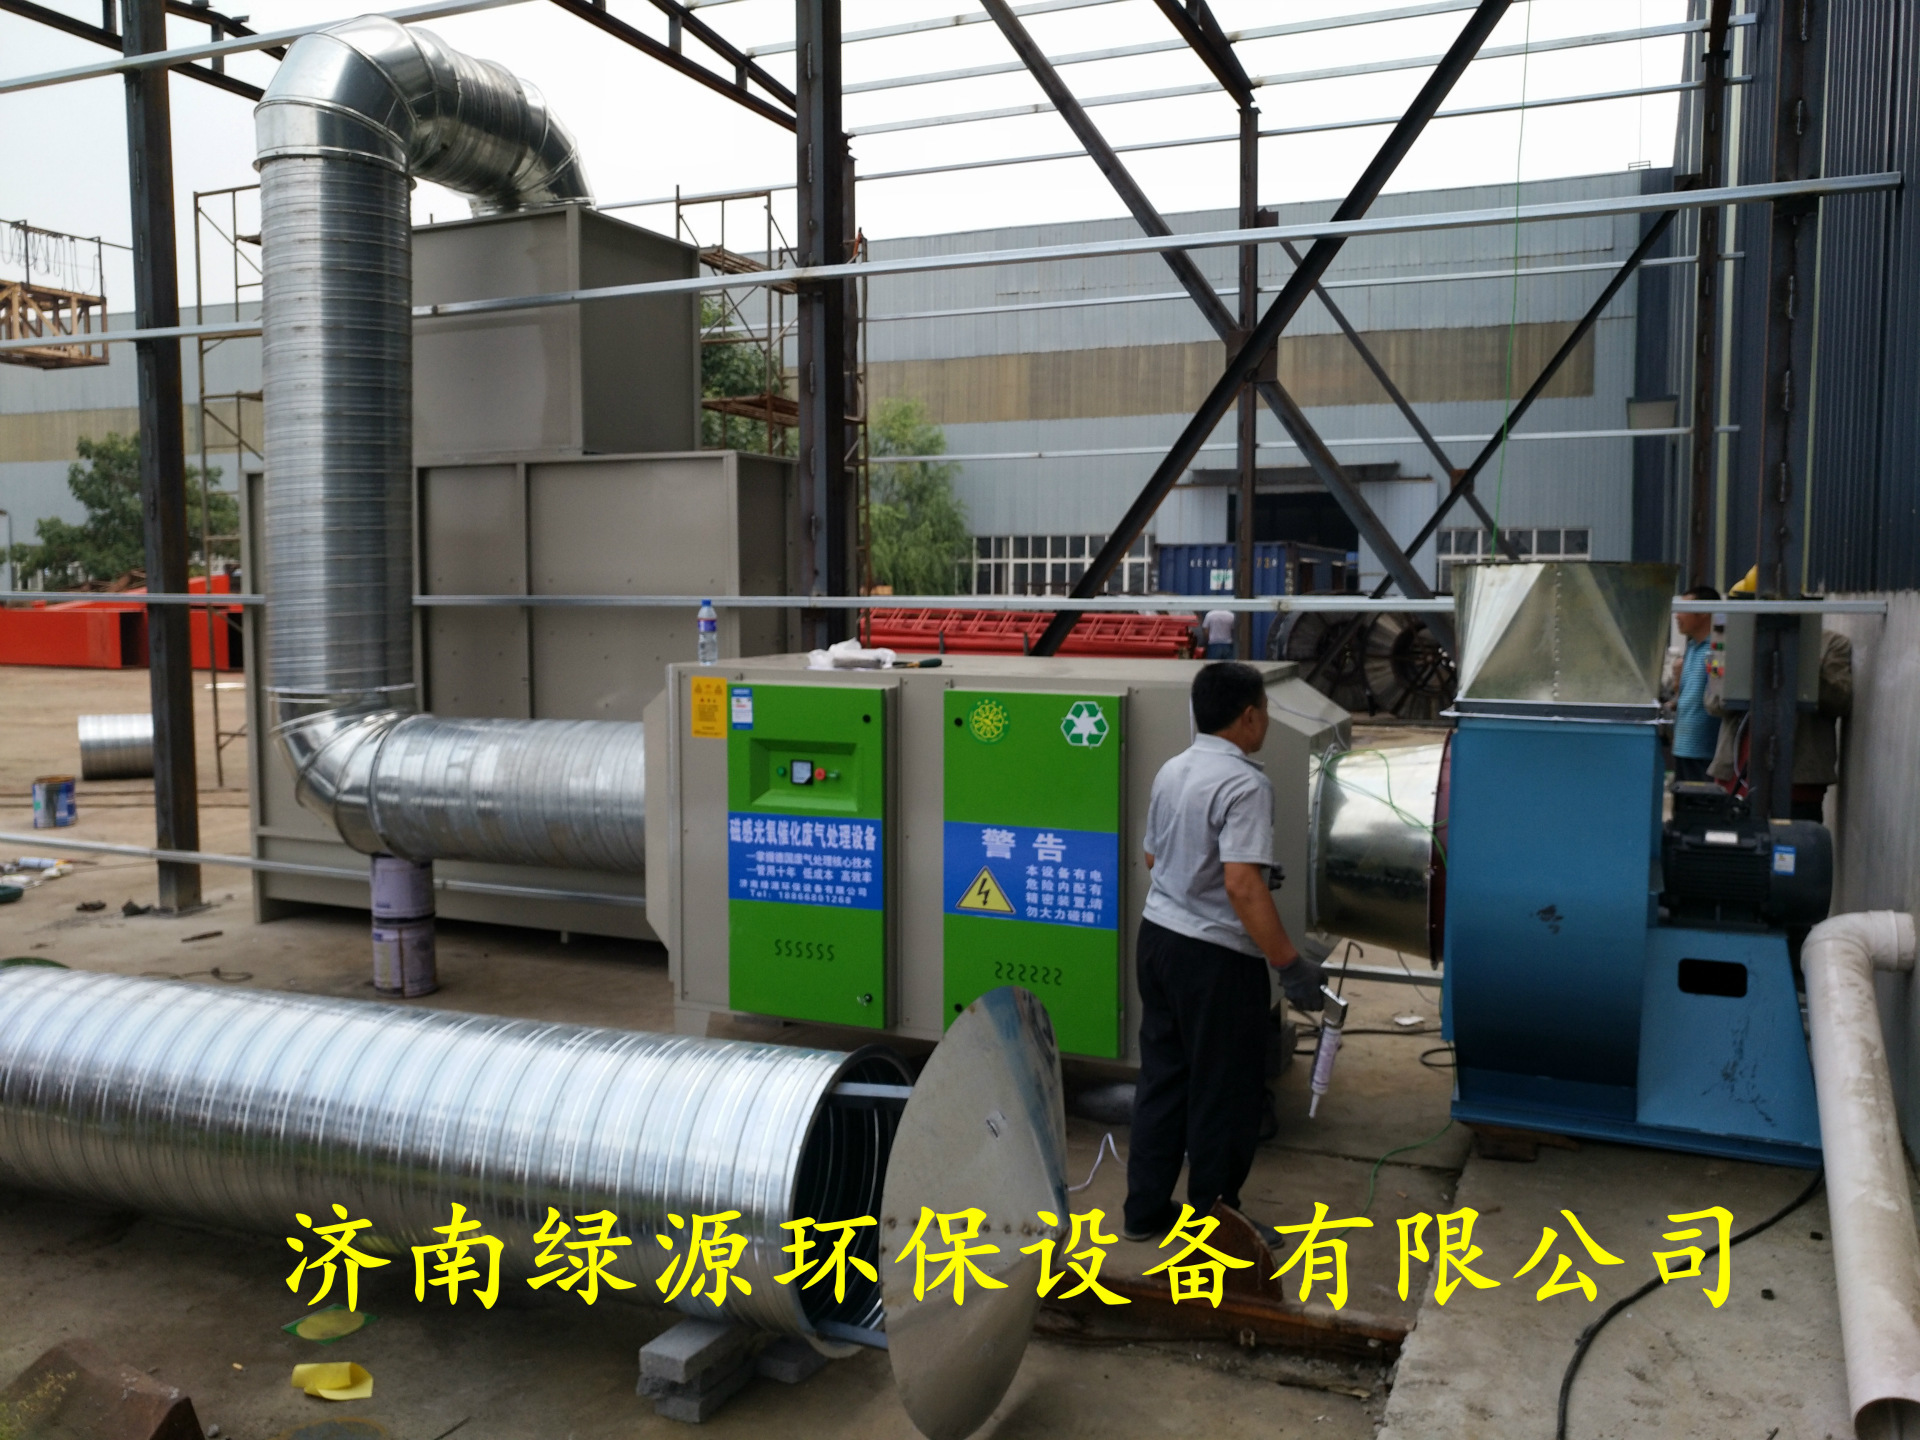 无泵水帘漆雾处理设备 光氧催化废气处理设备 达标型漆雾净化设备示例图5